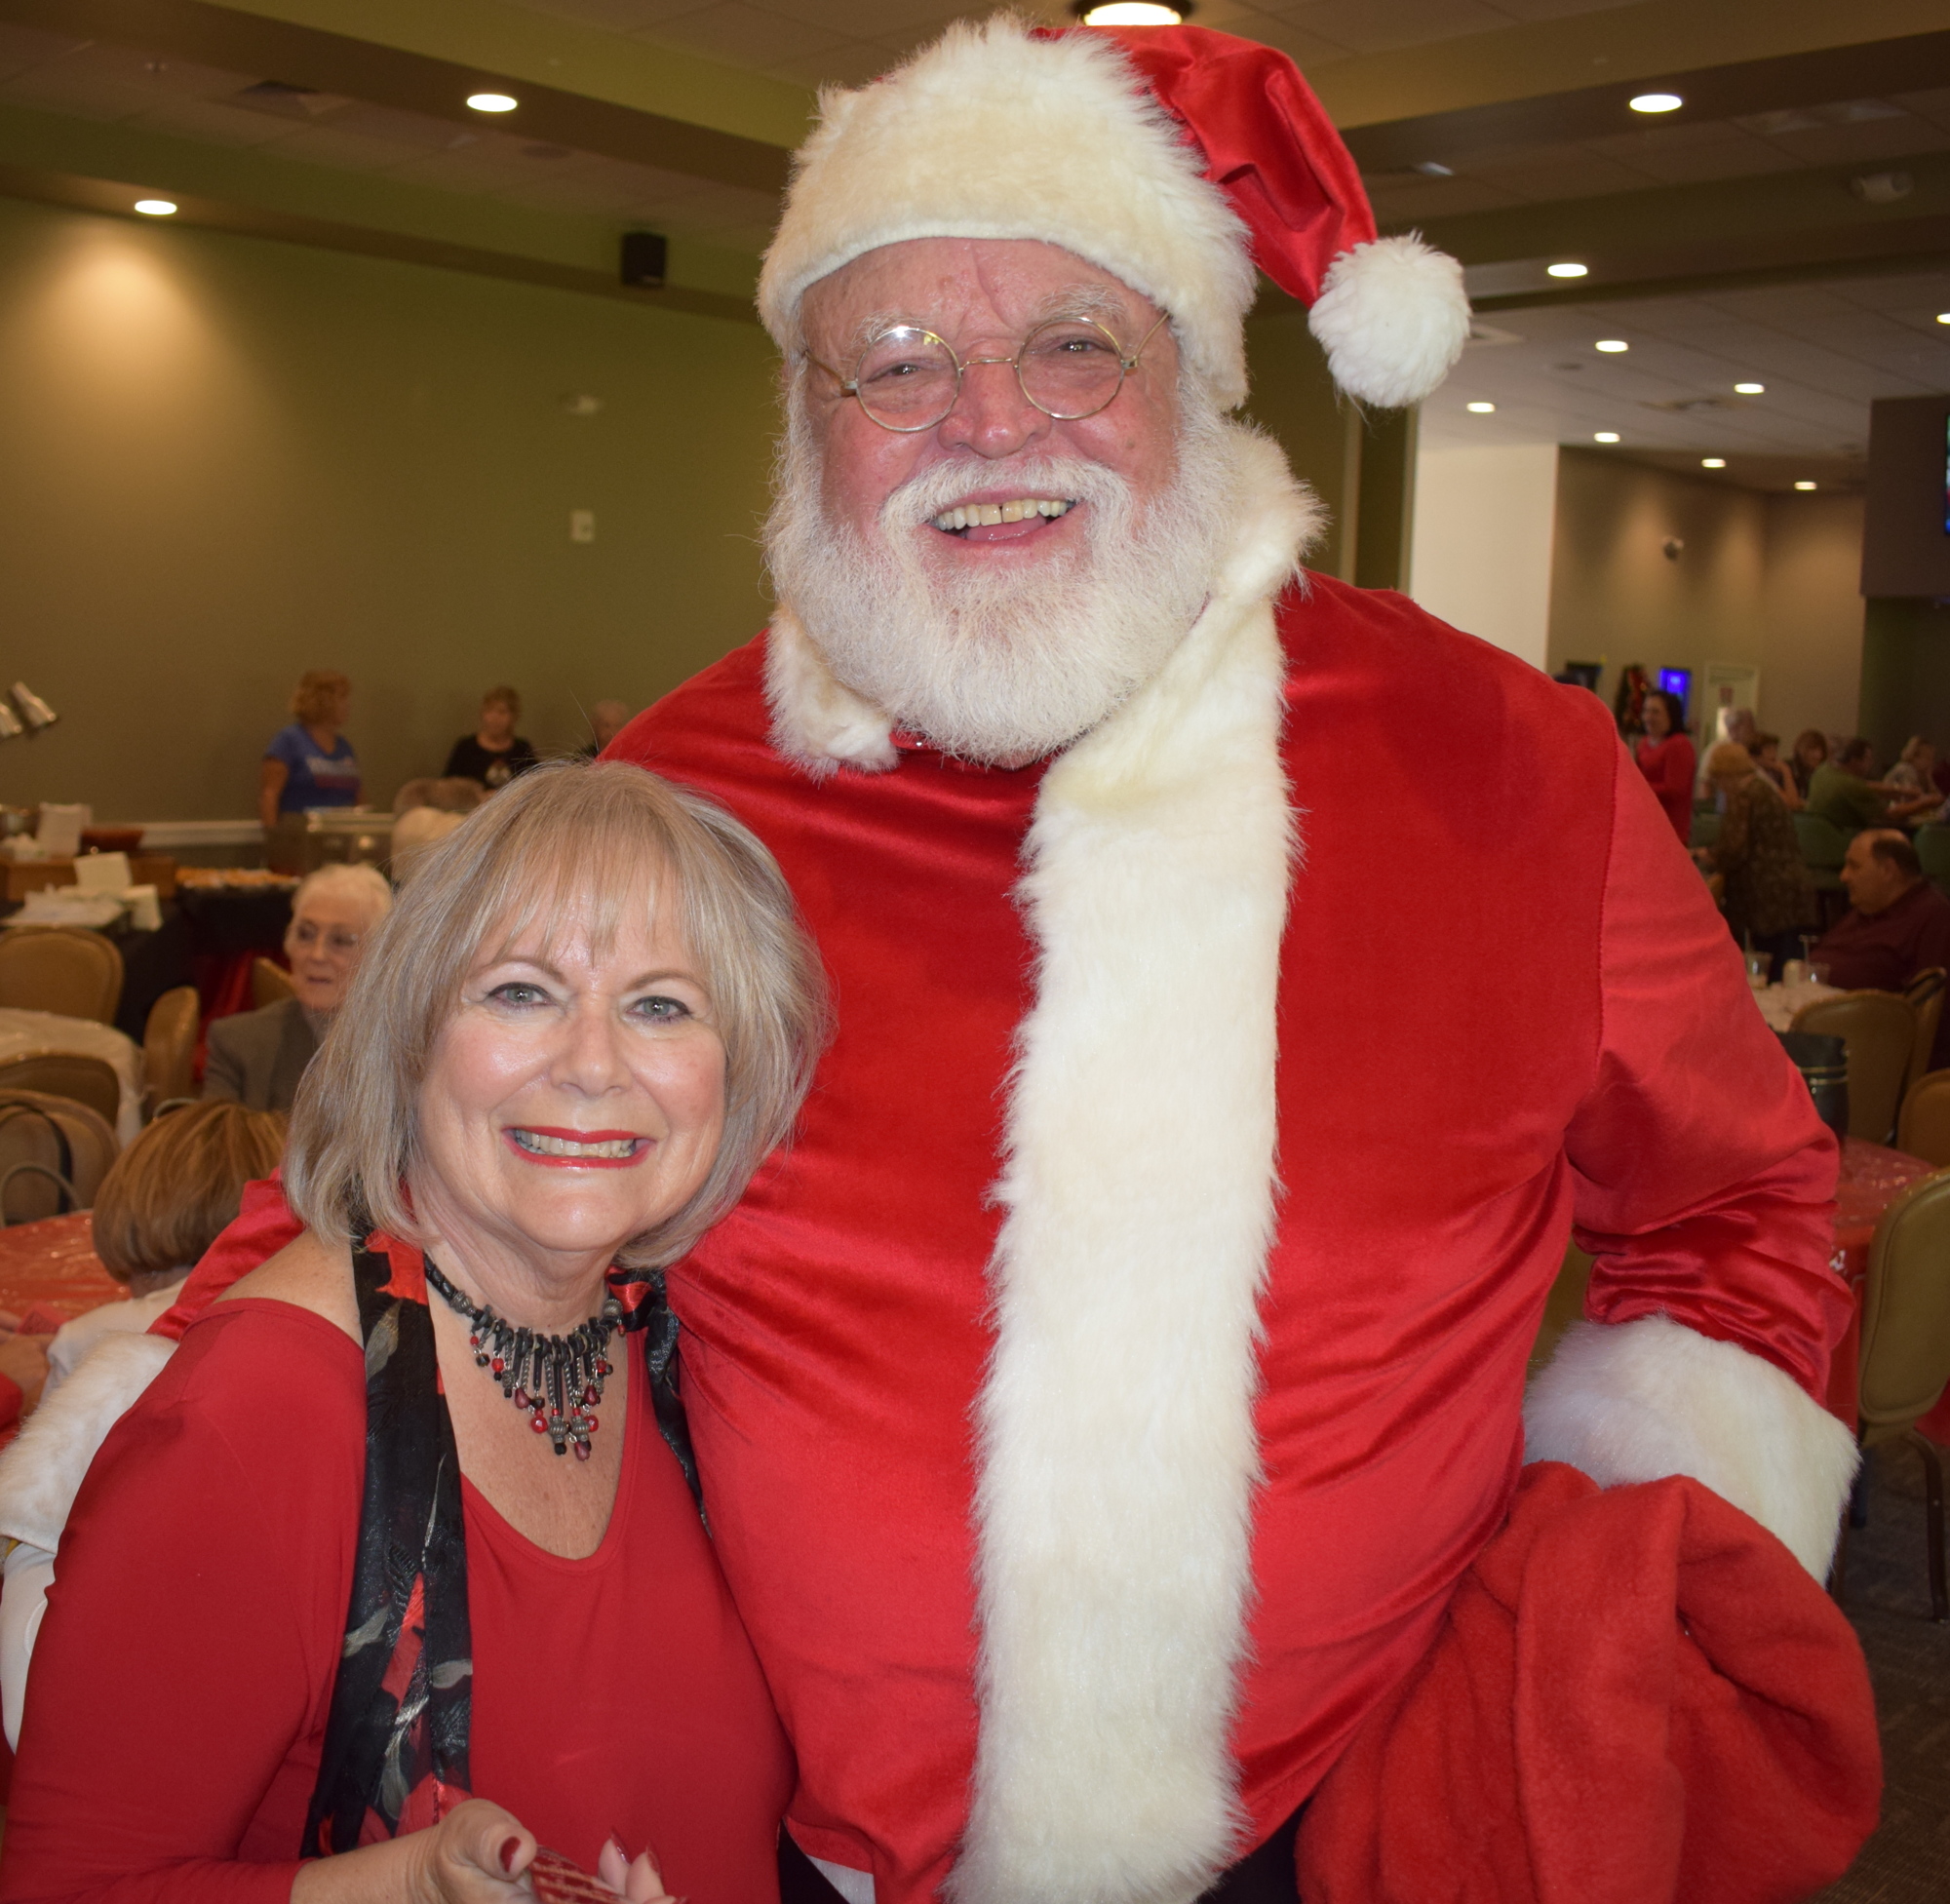 Meals on Wheels PLUS volunteer Sharon Zawadski gets a hug from Santa (Elks member Ron Lee) at the event.